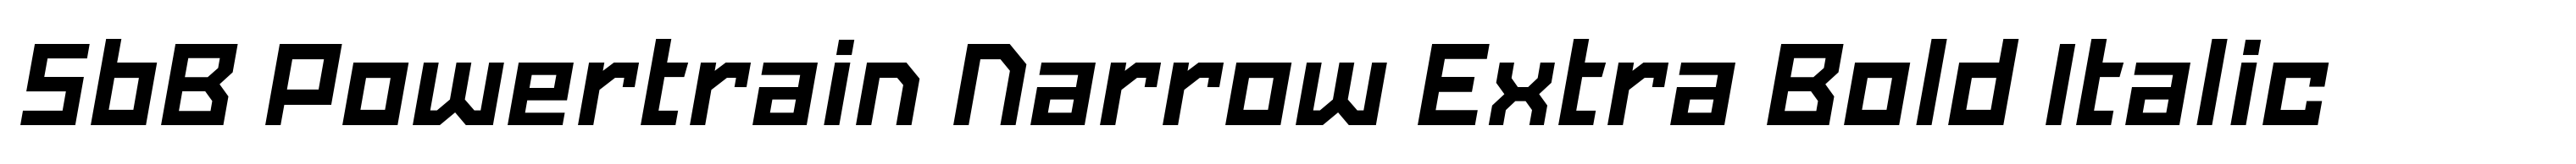 SbB Powertrain Narrow Extra Bold Italic